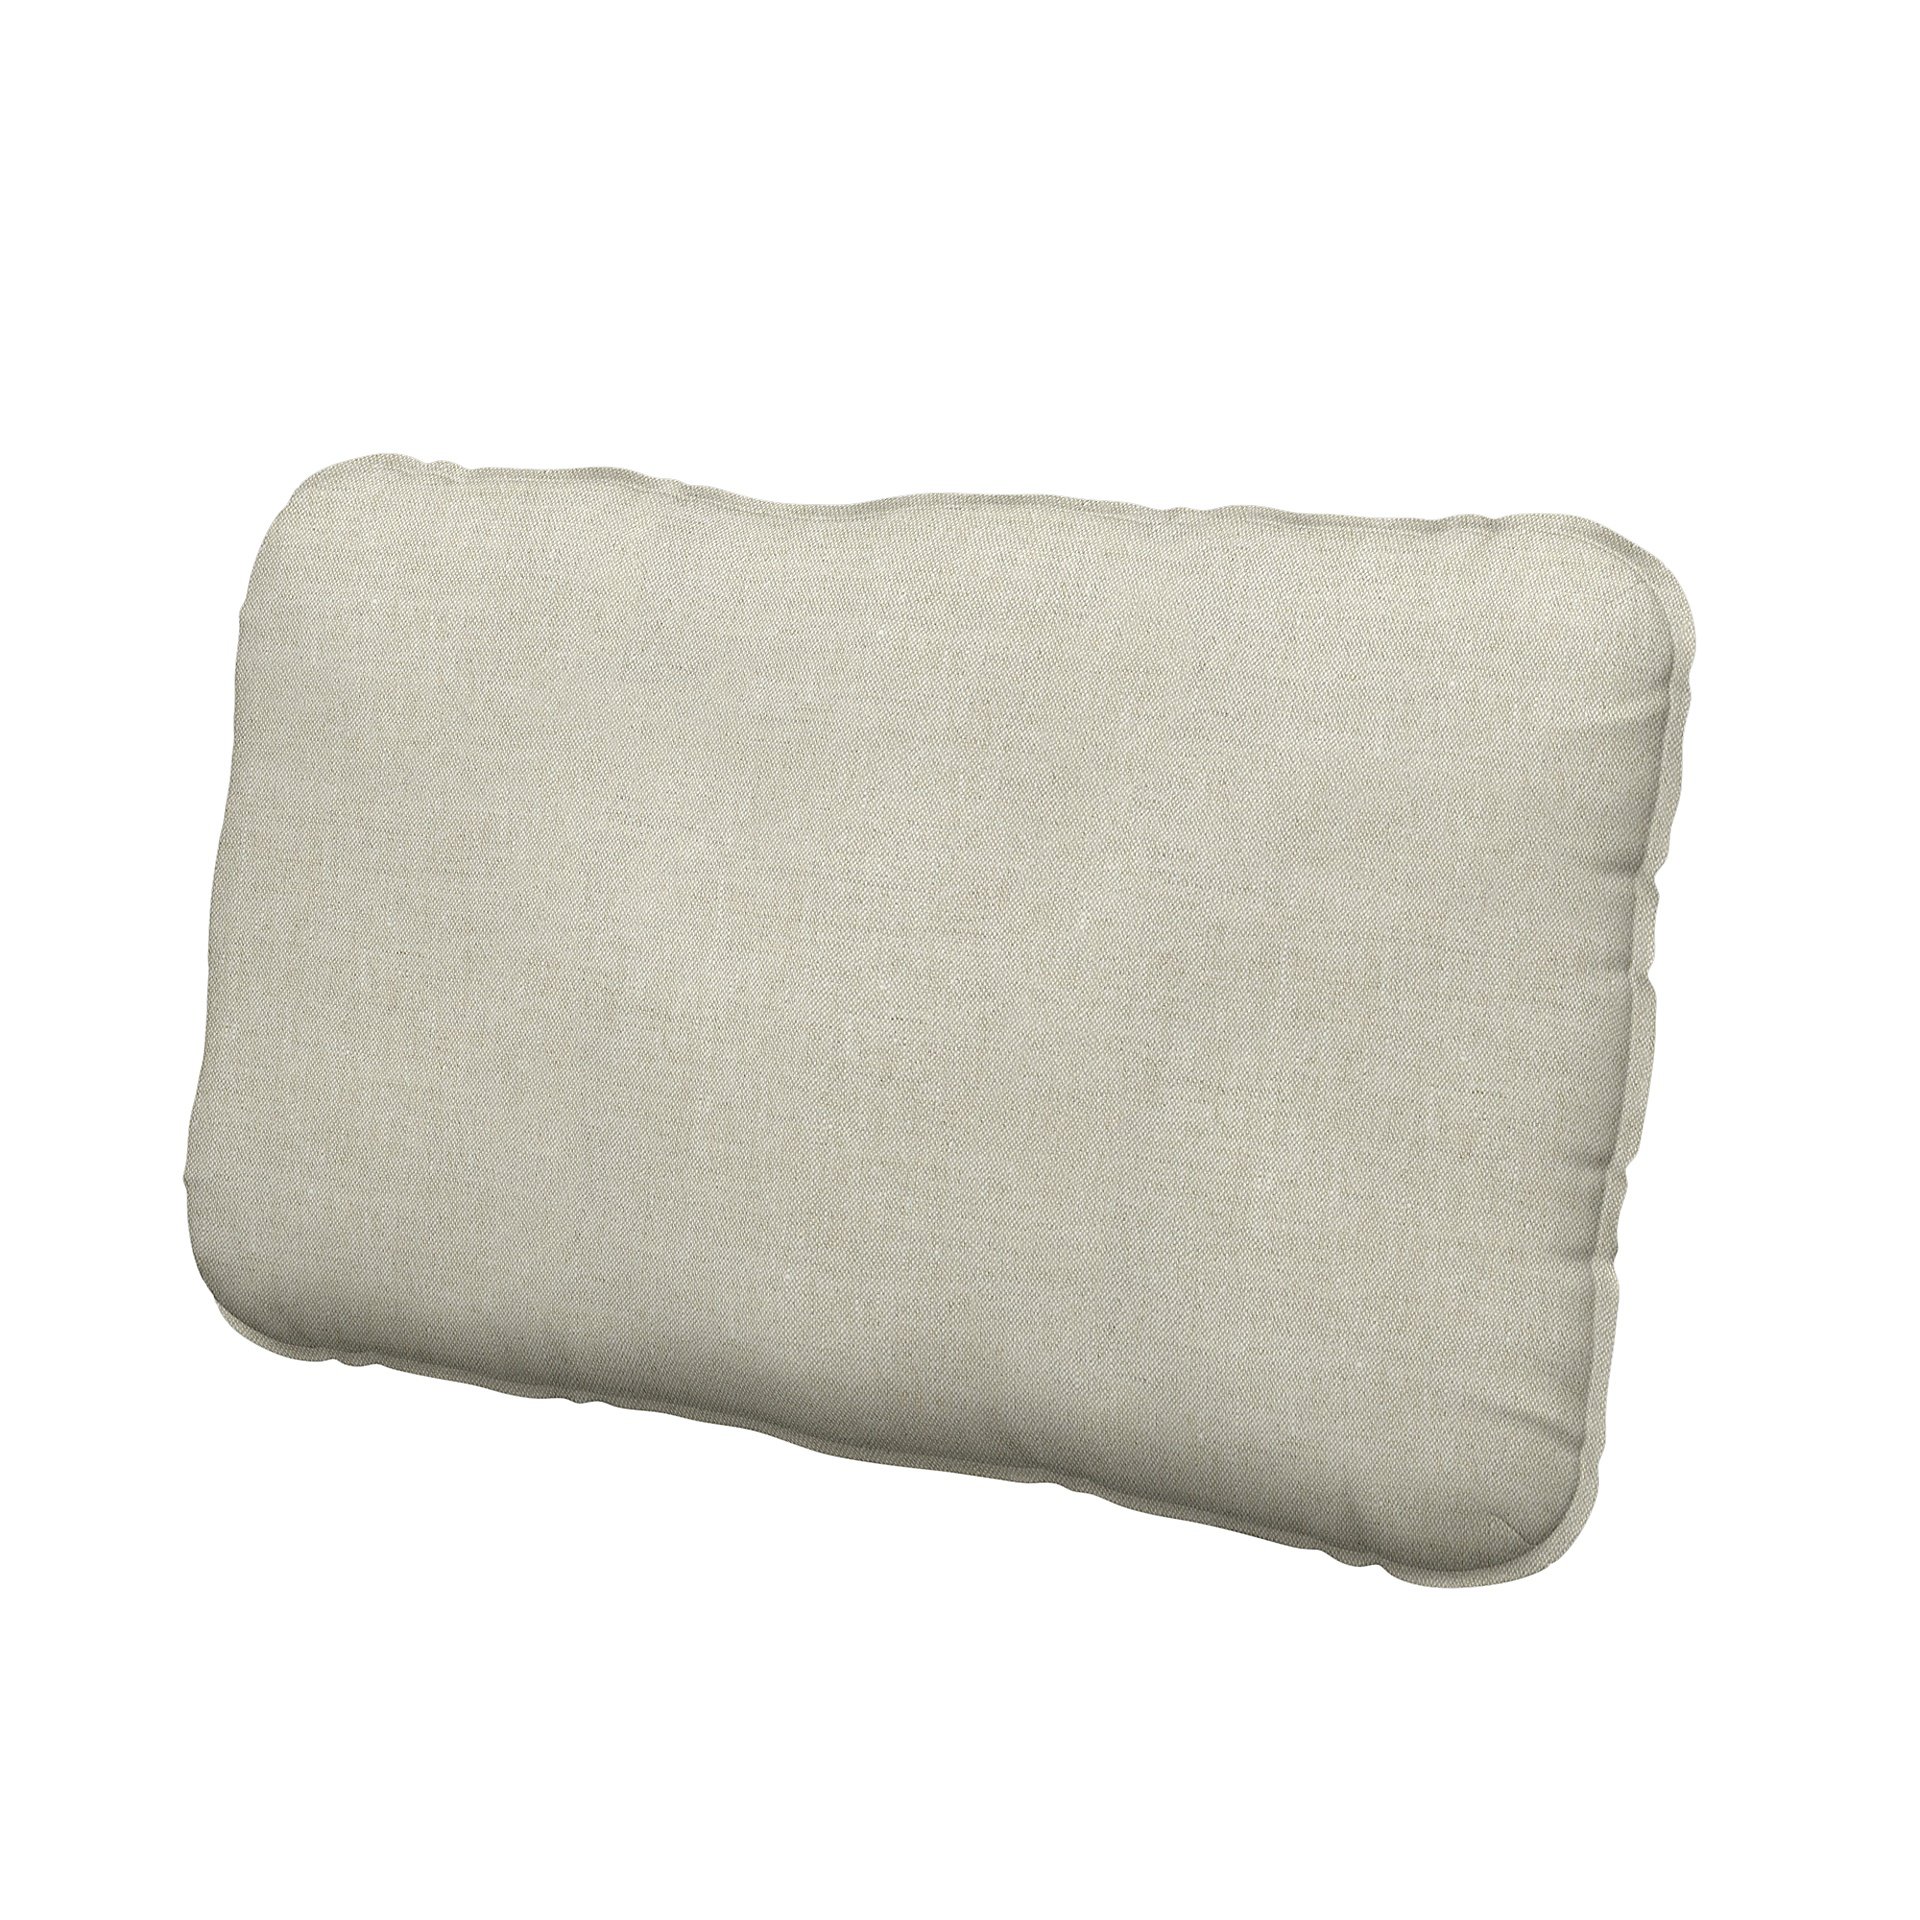 IKEA - Vallentuna back cushion cover 40x75cm, Natural, Linen - Bemz